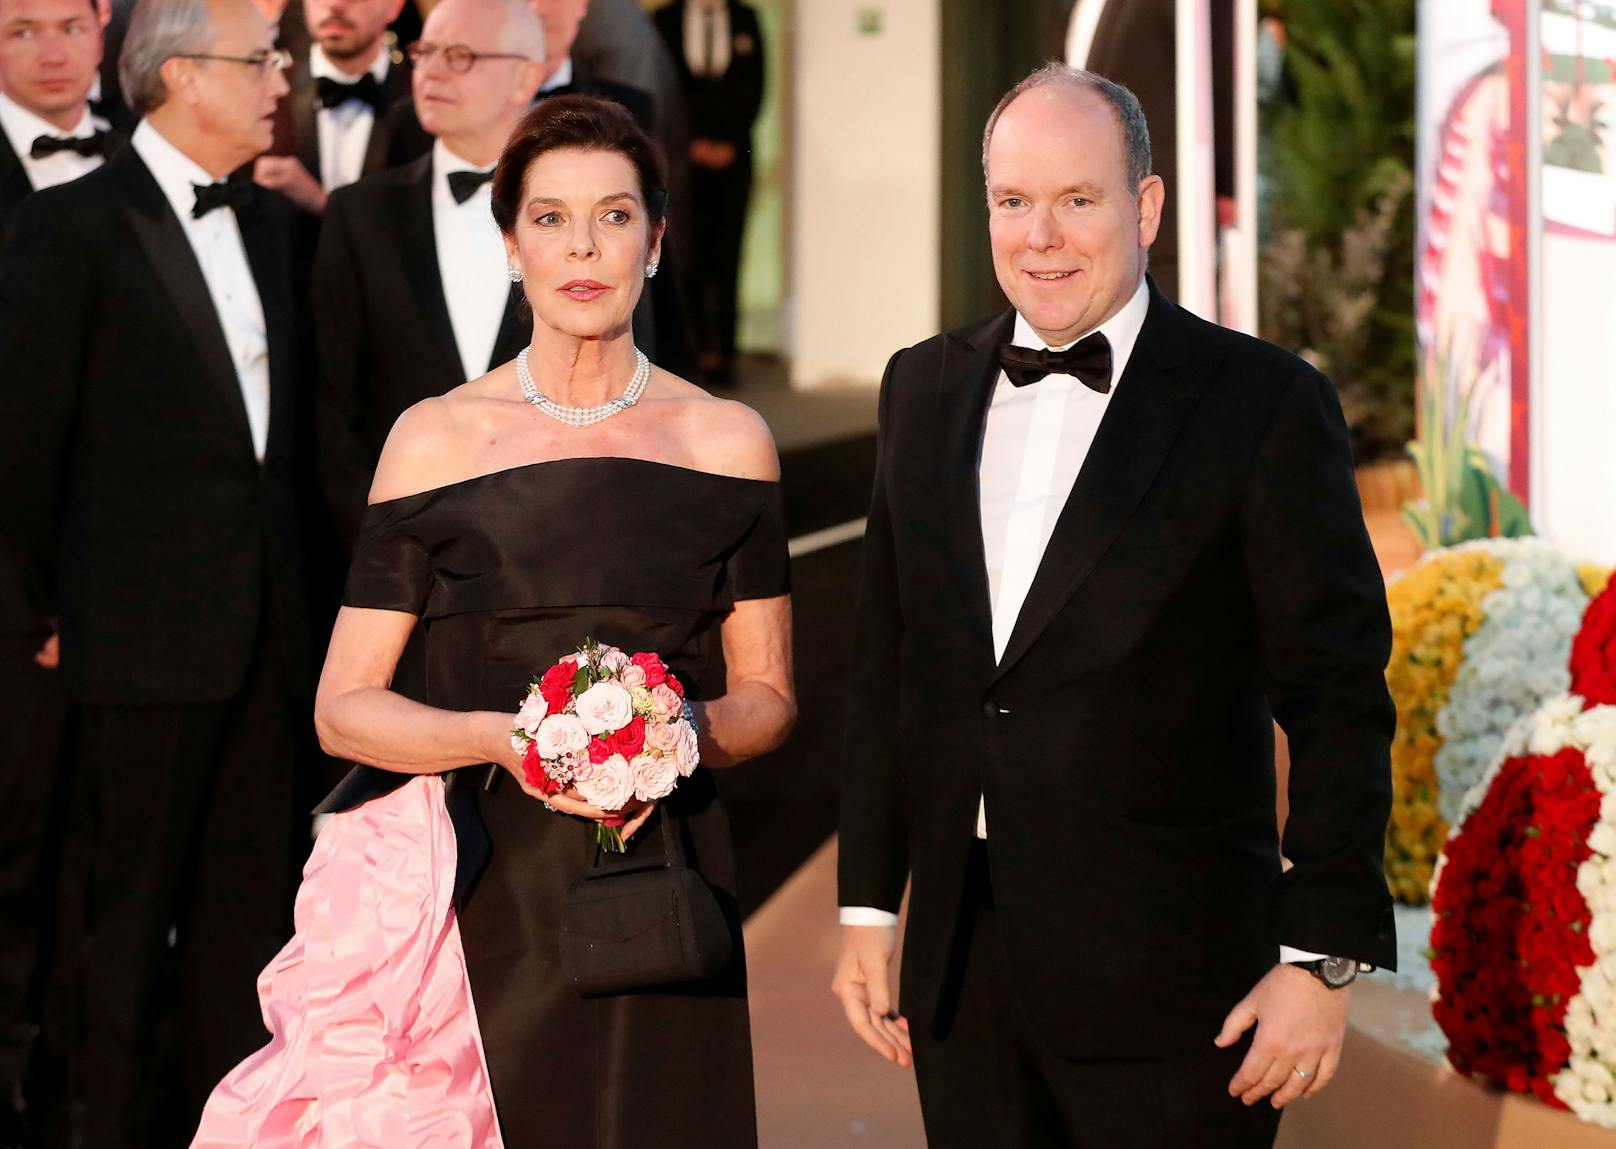 Albert und Caroline von Monaco in Wien – das ist geplant